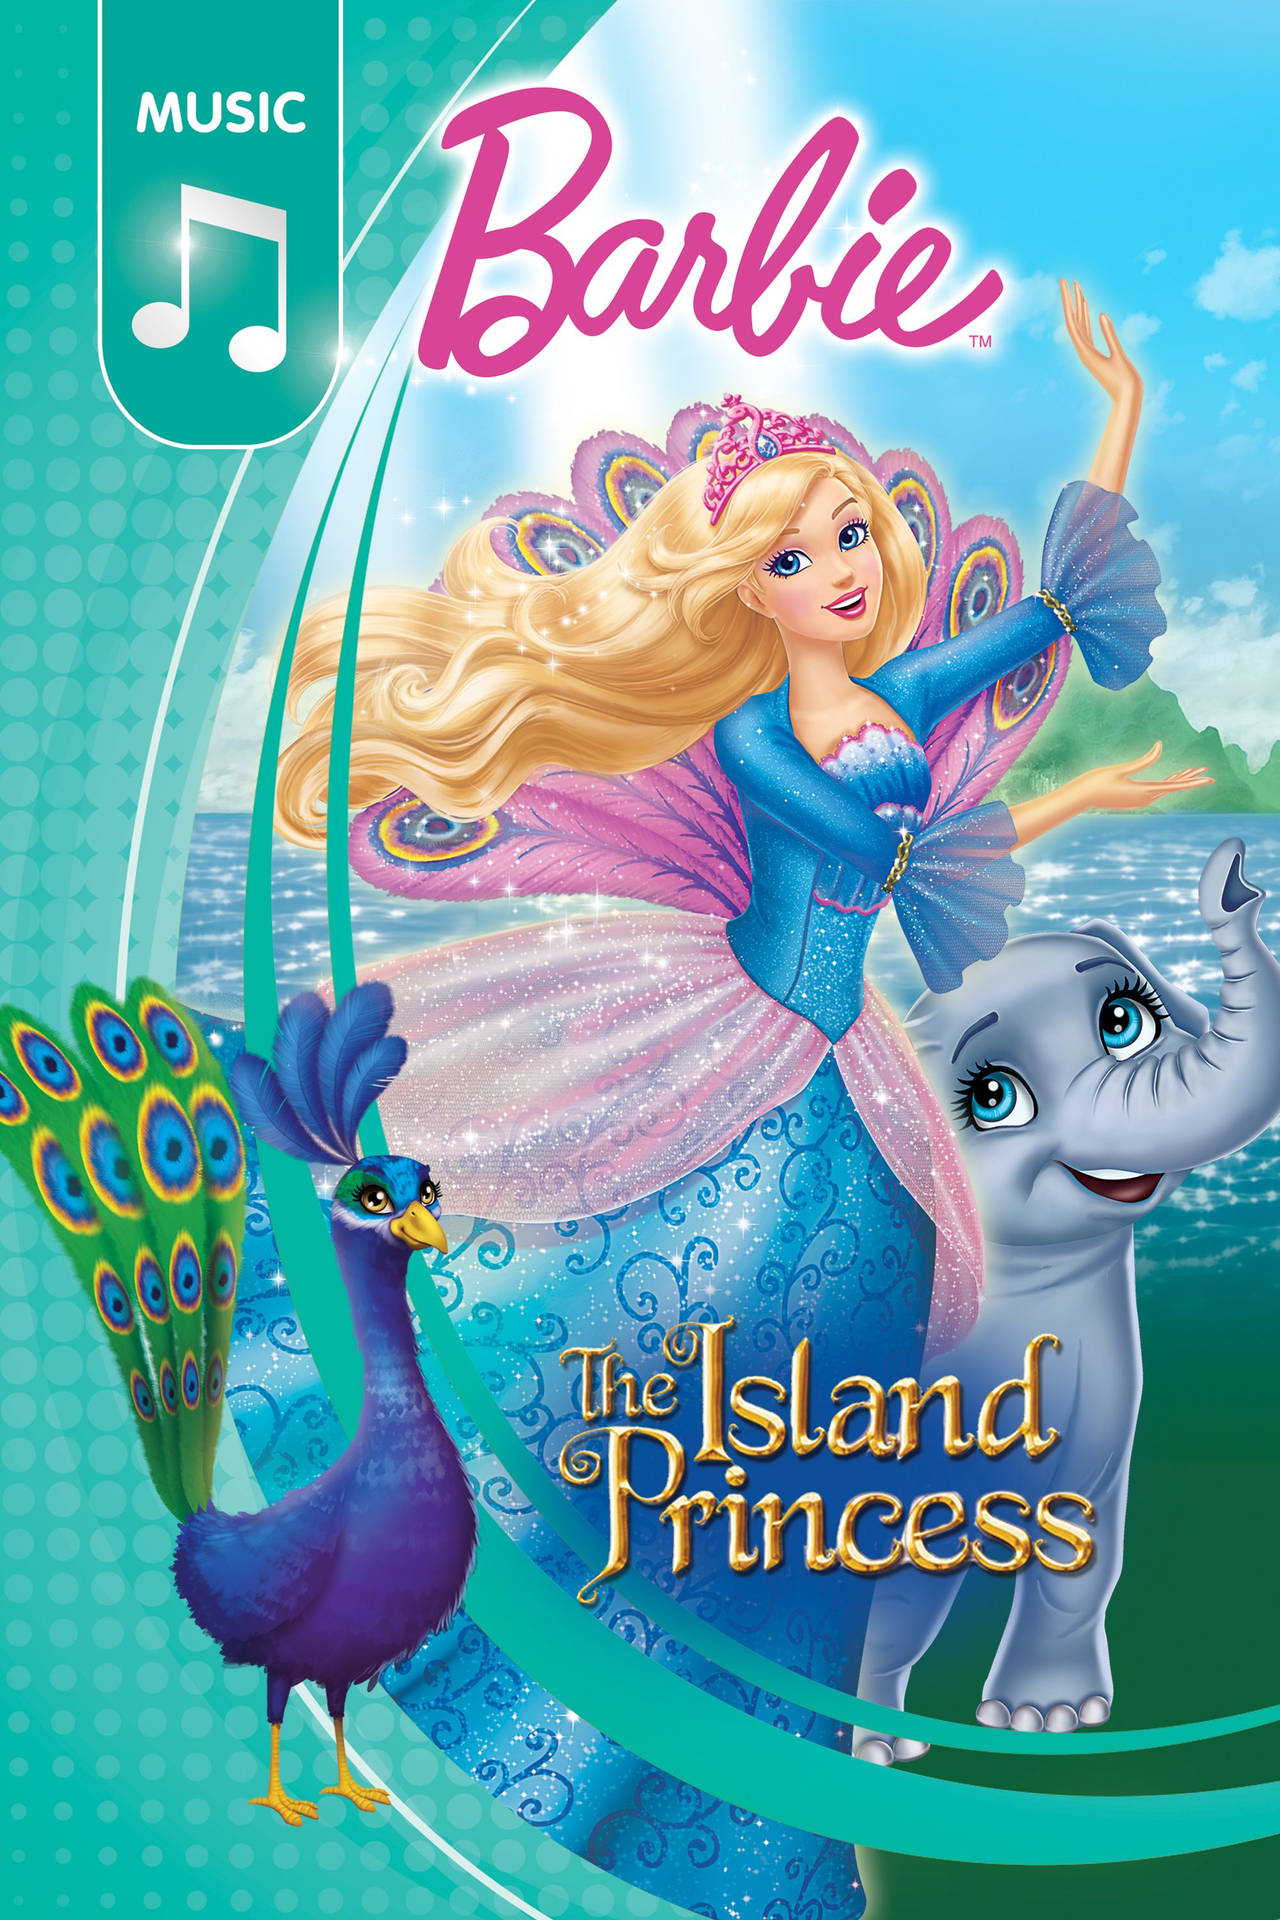 Barbie Princess The Island Princess Cover Background